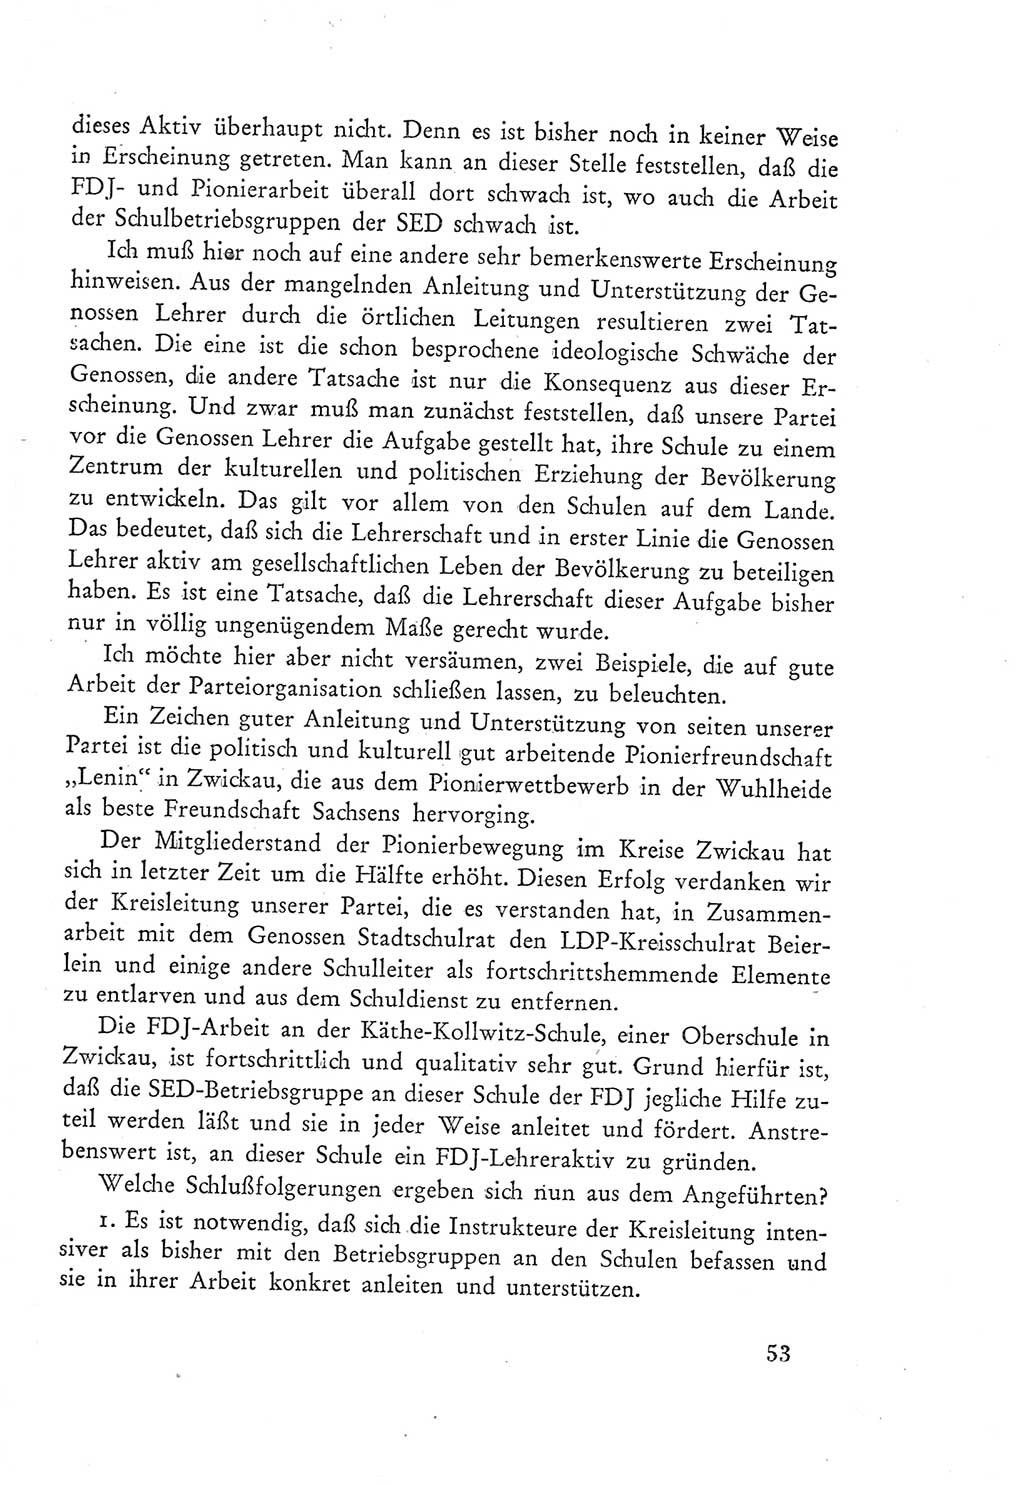 Protokoll der Verhandlungen des Ⅲ. Parteitages der Sozialistischen Einheitspartei Deutschlands (SED) [Deutsche Demokratische Republik (DDR)] 1950, Band 2, Seite 53 (Prot. Verh. Ⅲ. PT SED DDR 1950, Bd. 2, S. 53)